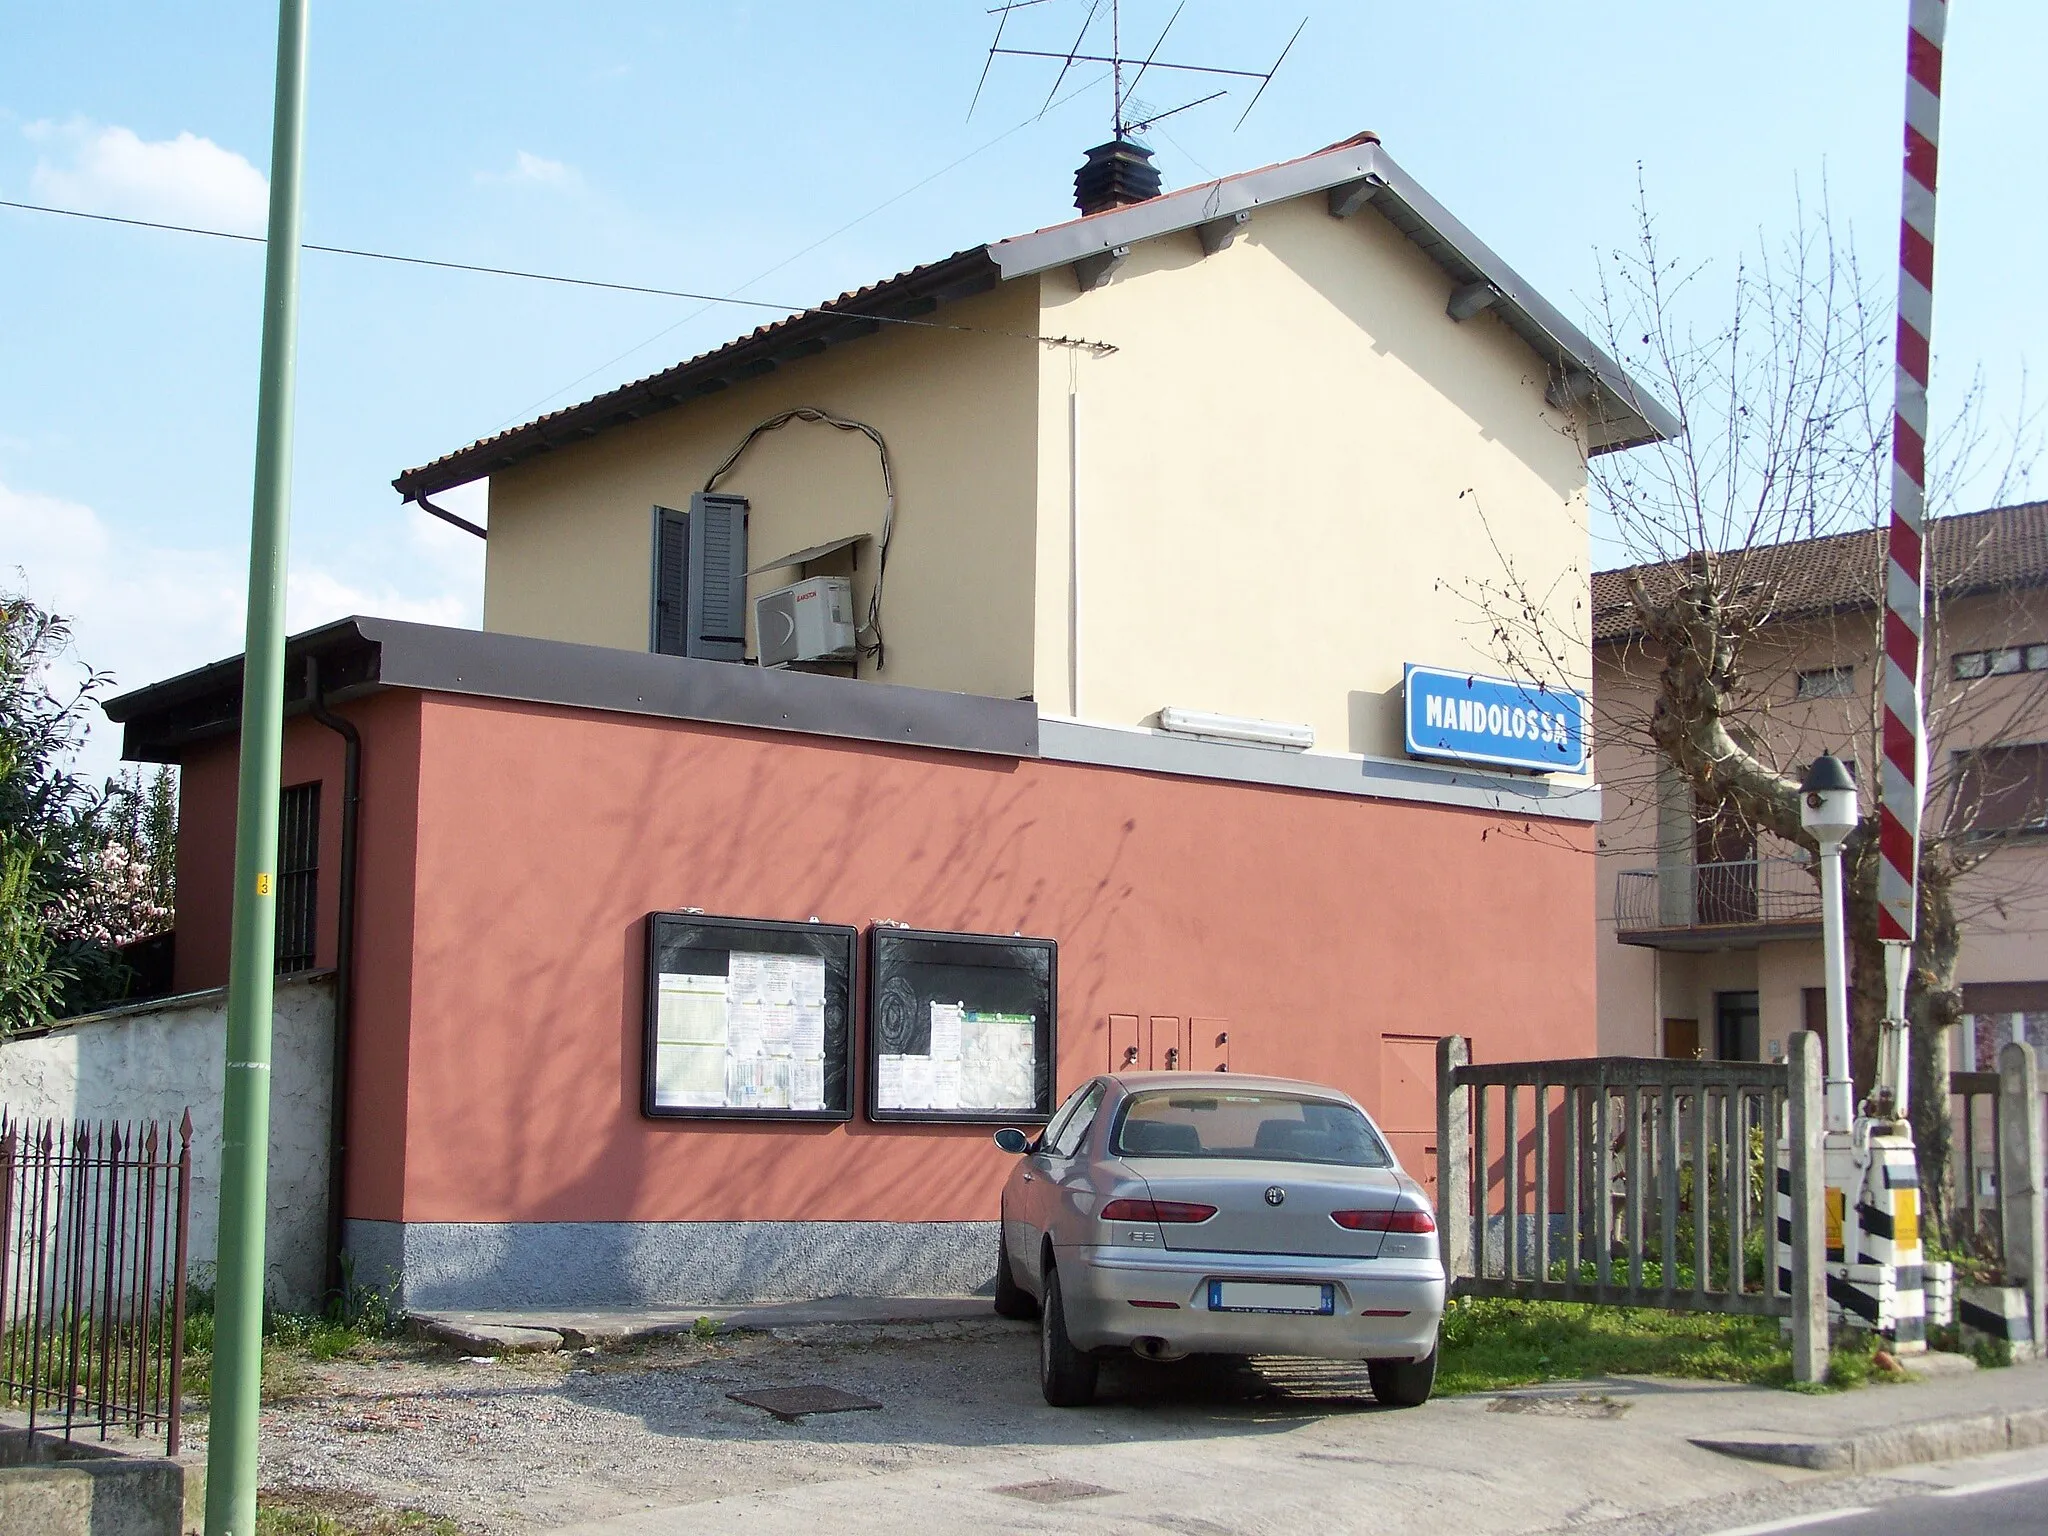 Photo showing: Lato campagna della stazione di Mandolossa a Brescia, situata lungo la ferrovia Brescia-Iseo-Edolo